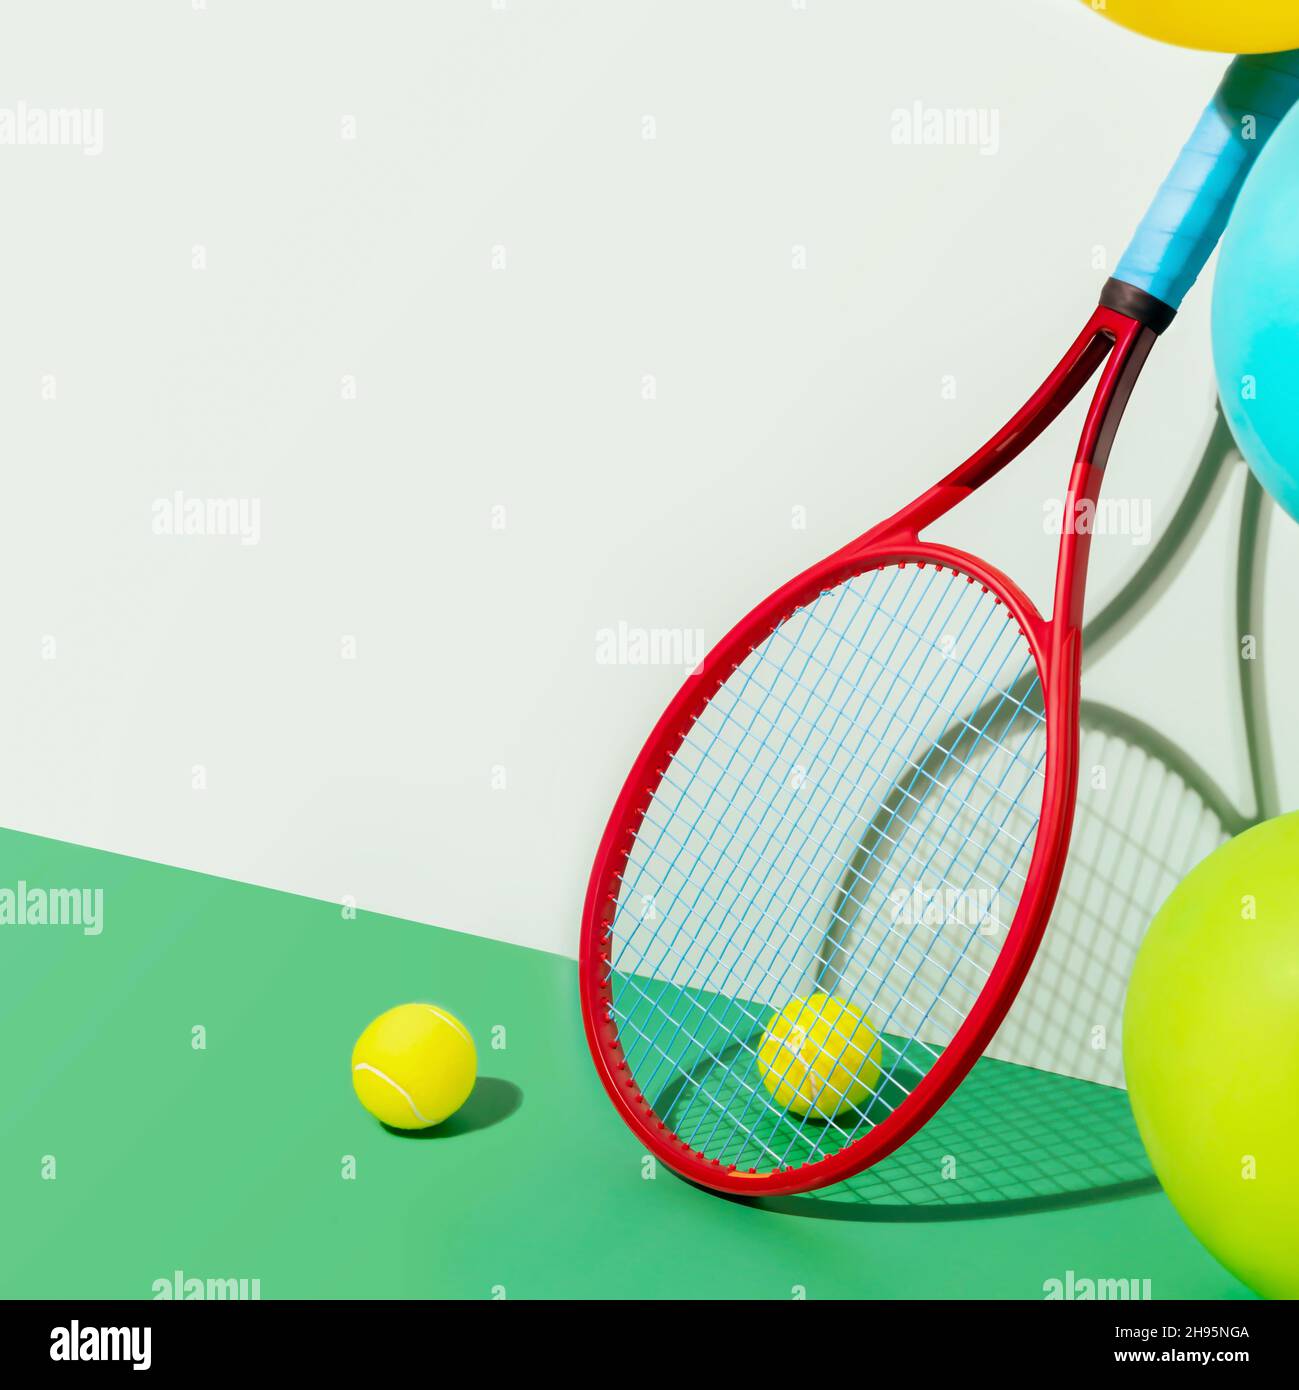 Composition de tennis avec raquette, balles de tennis jaunes et ballons colorés sur fond bleu-vert avec place pour le texte.Bannière de vacances pour un tennis Banque D'Images